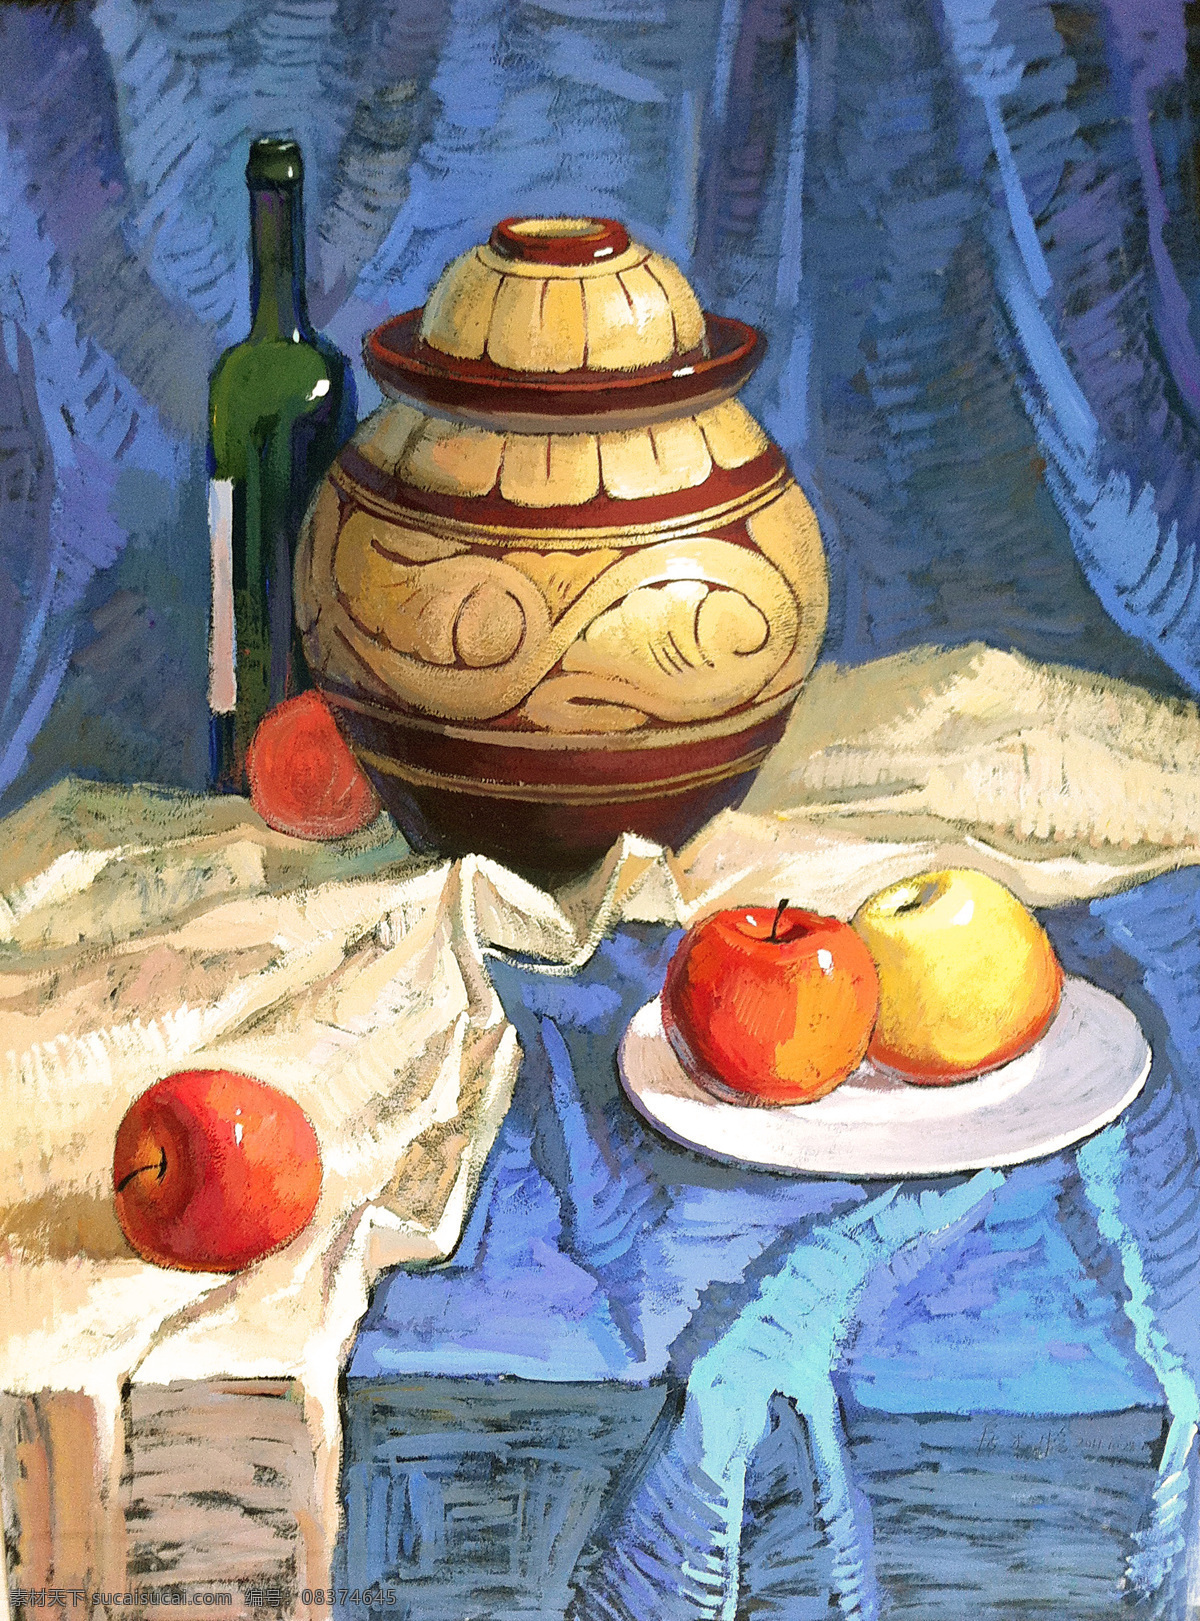 罐子水粉静物 水粉 静物 色彩 美术 绘画 色调 冷色调 罐子 盘子 水果 苹果 酒瓶 衬布